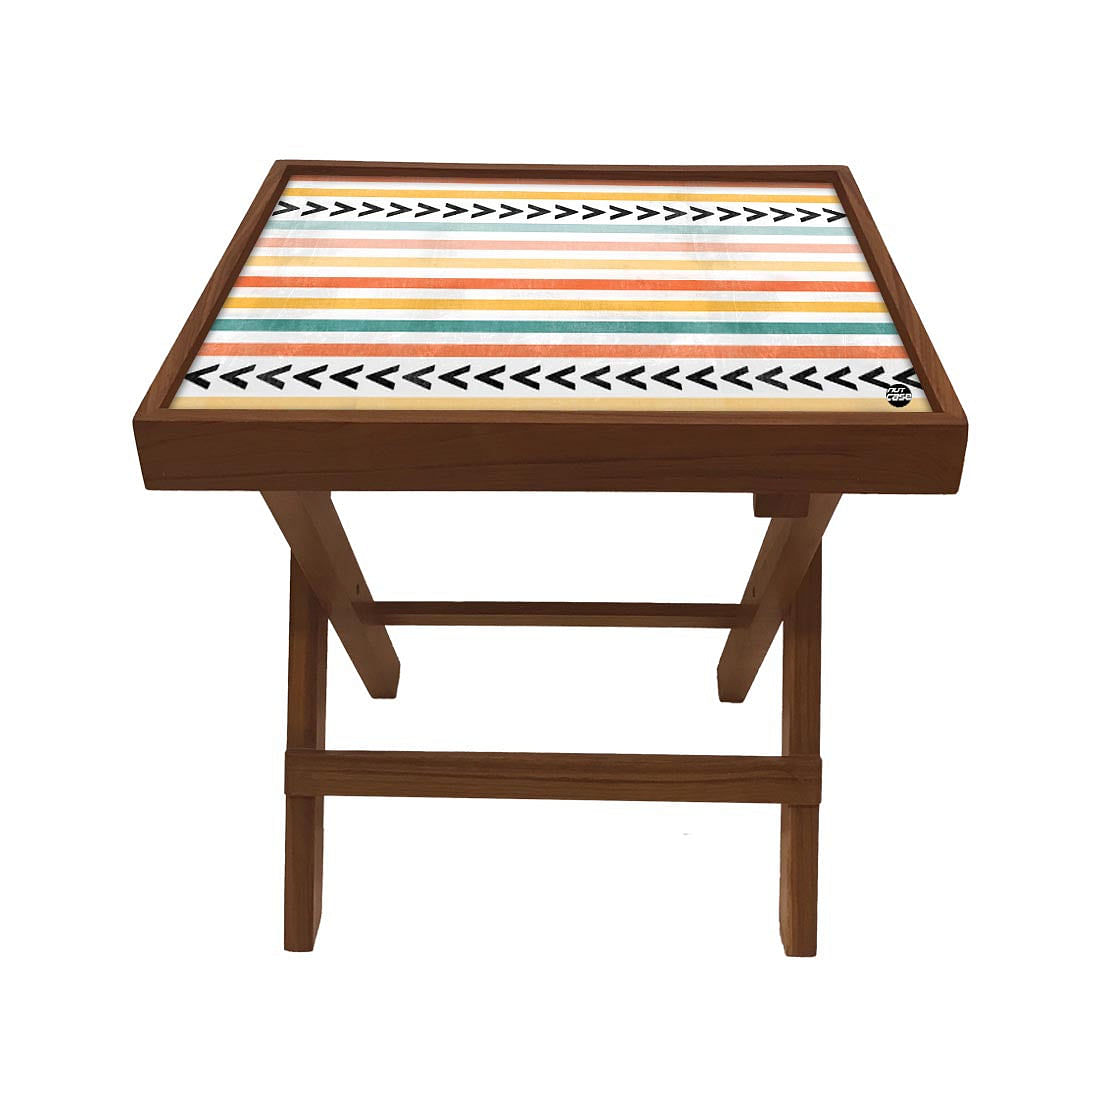 Folding Side Table Bedroom - Teak Wood -Arrow Nutcase